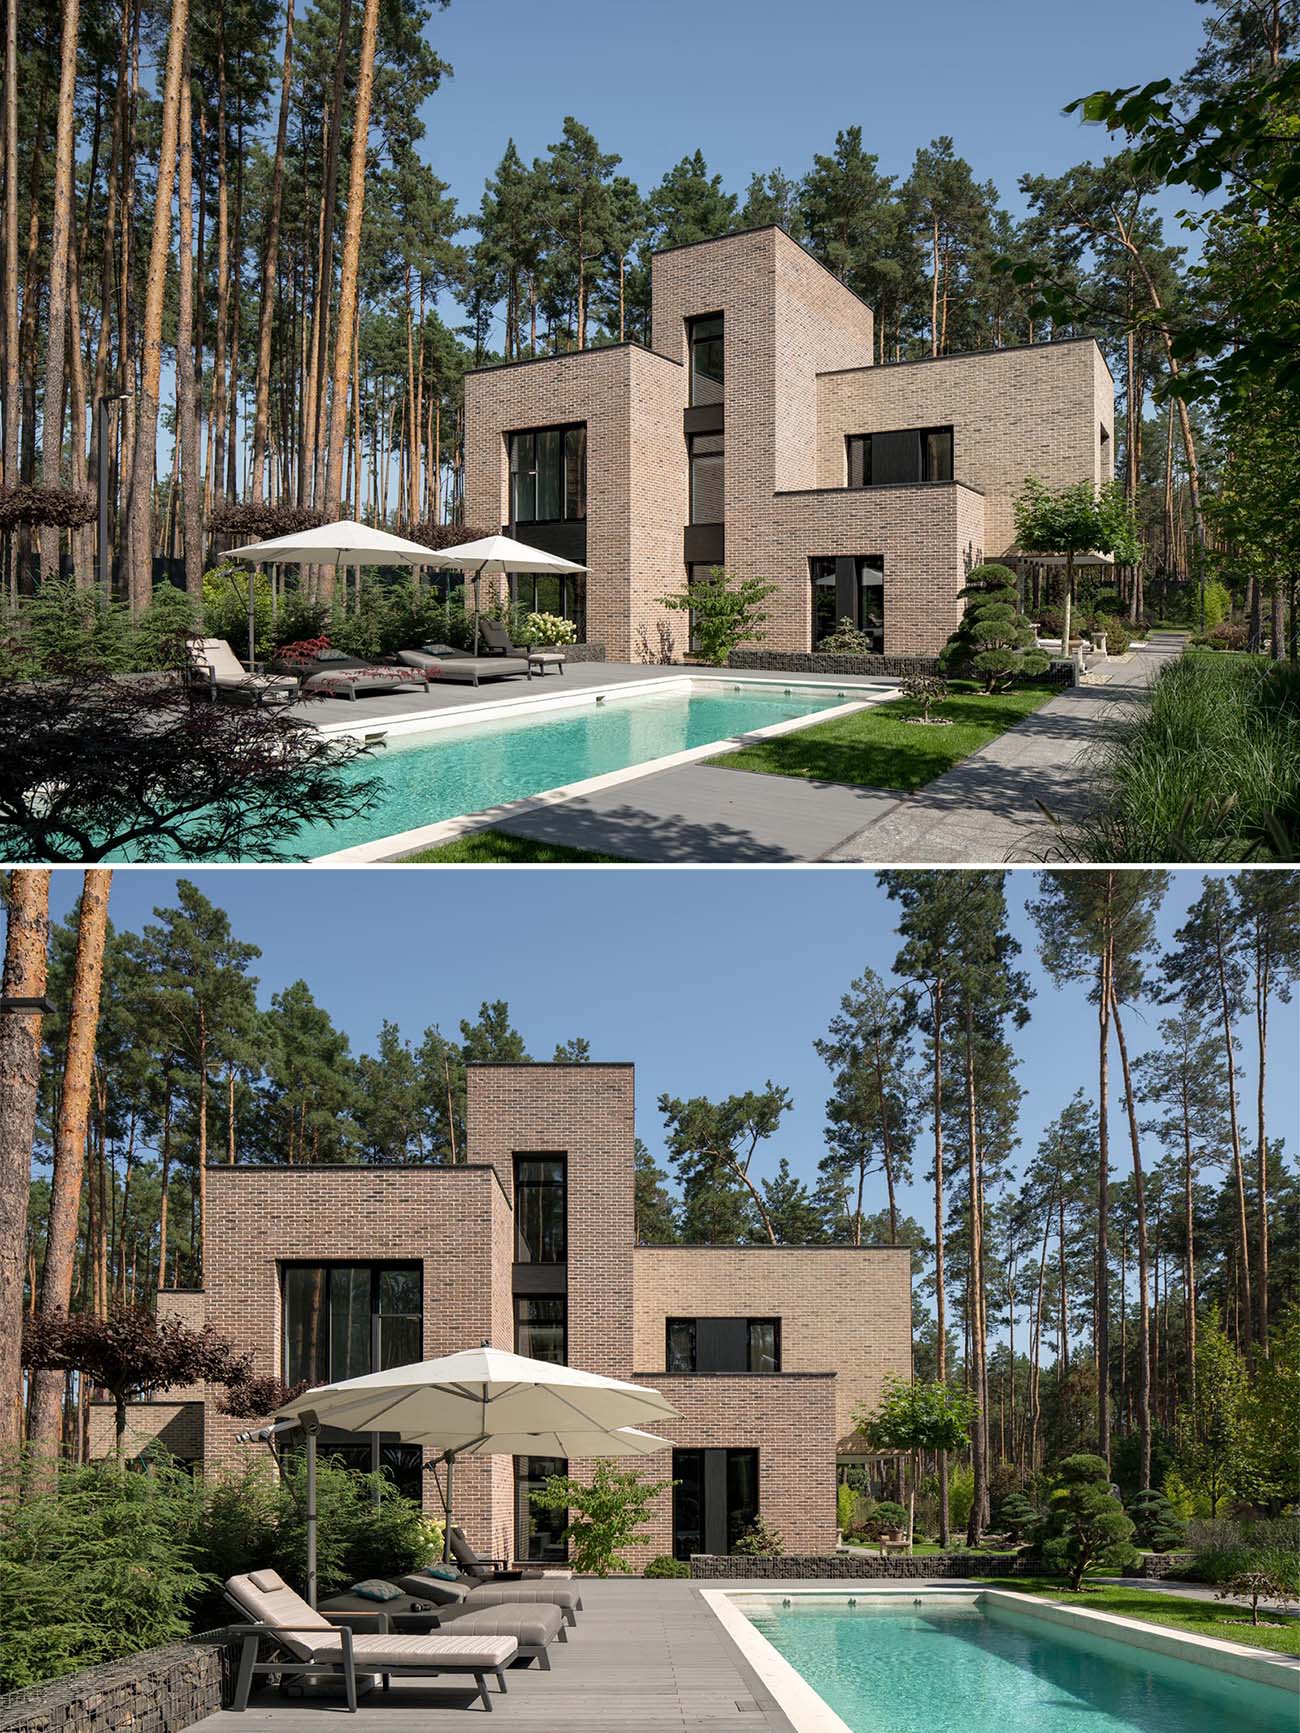 Ngôi nhà bằng gạch hiện đại này có một hồ bơi dài hình chữ nhật với sàn được trang bị ghế tắm nắng ở một bên và một lối đi ở bên kia.